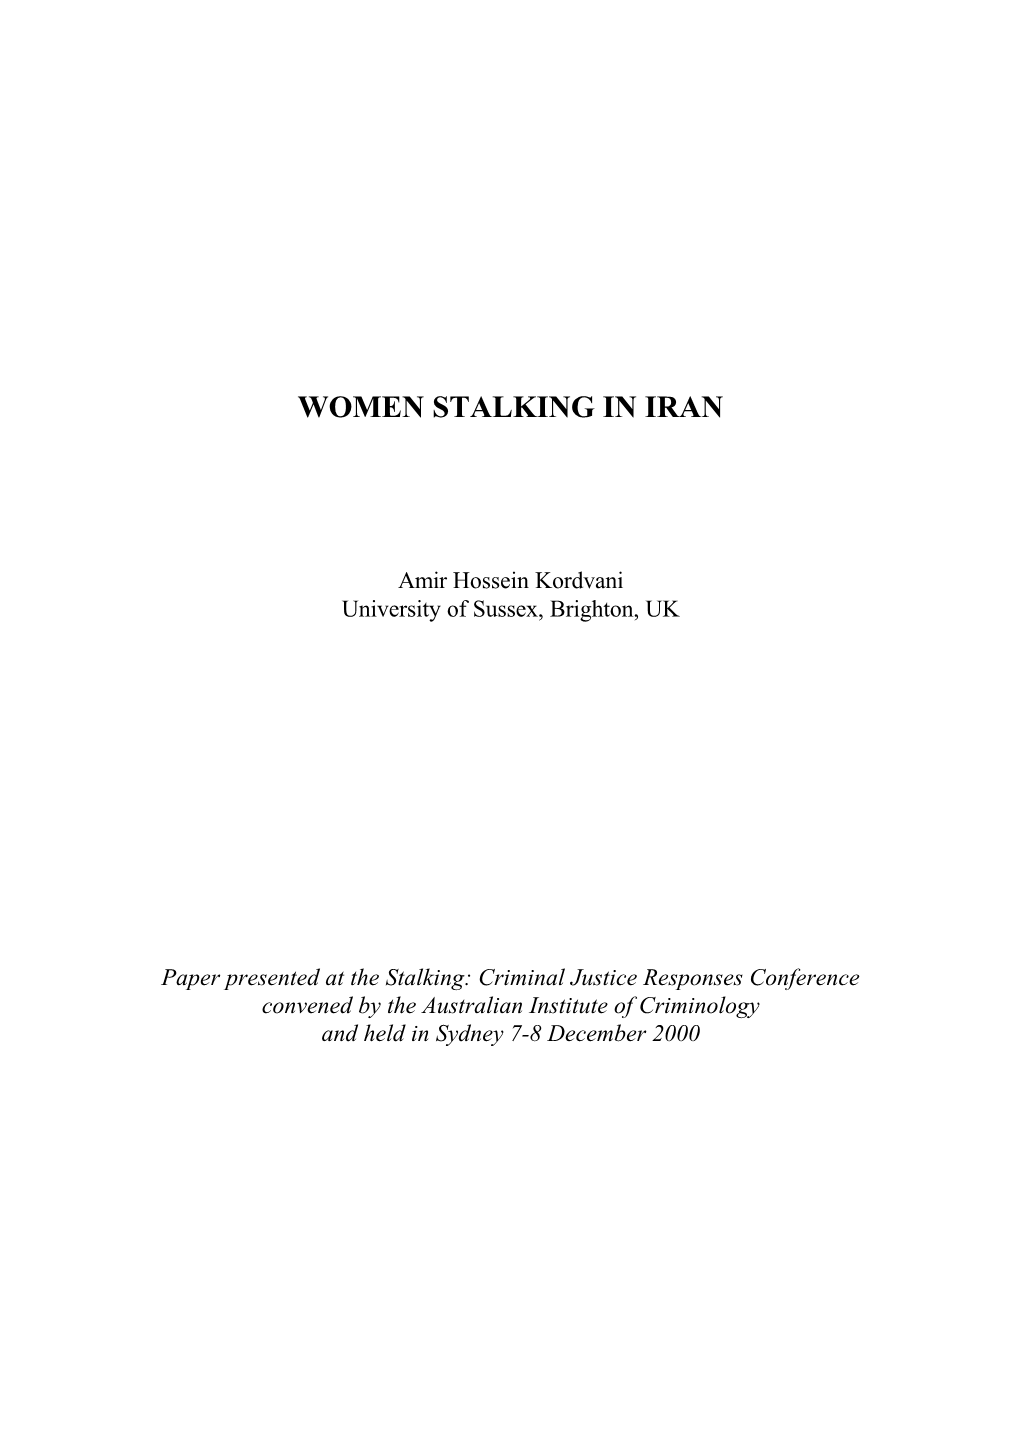 Women Stalking in Iran